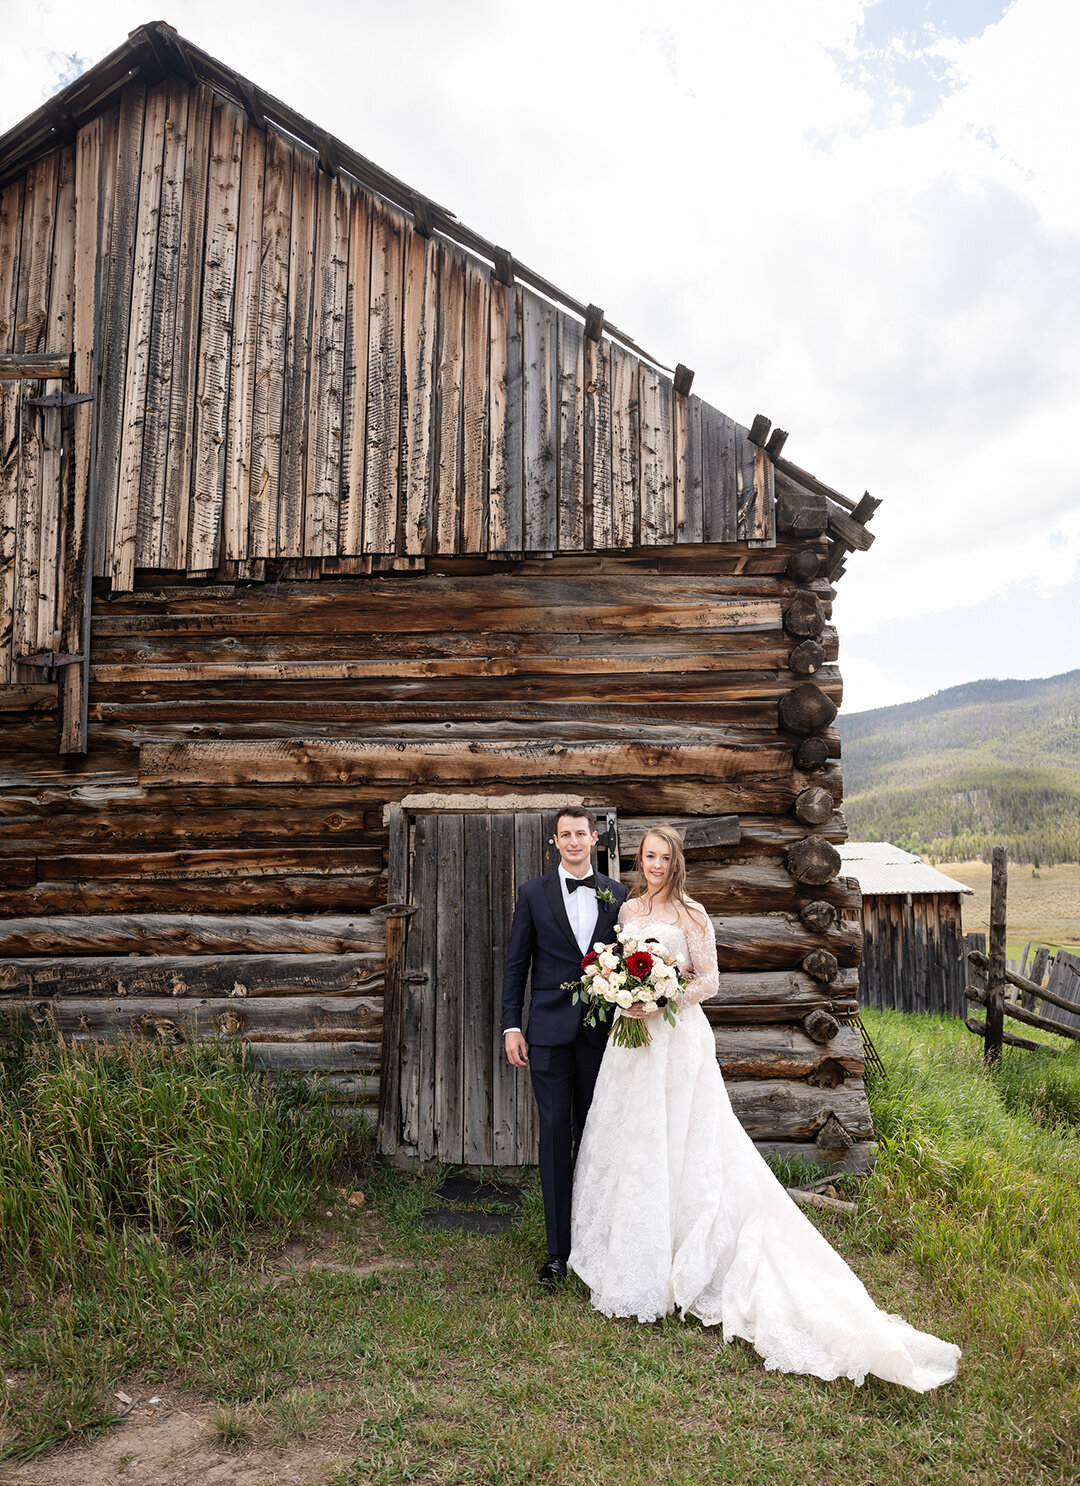 Keystone Ranch Colorado Wedding by Gobella.com 21